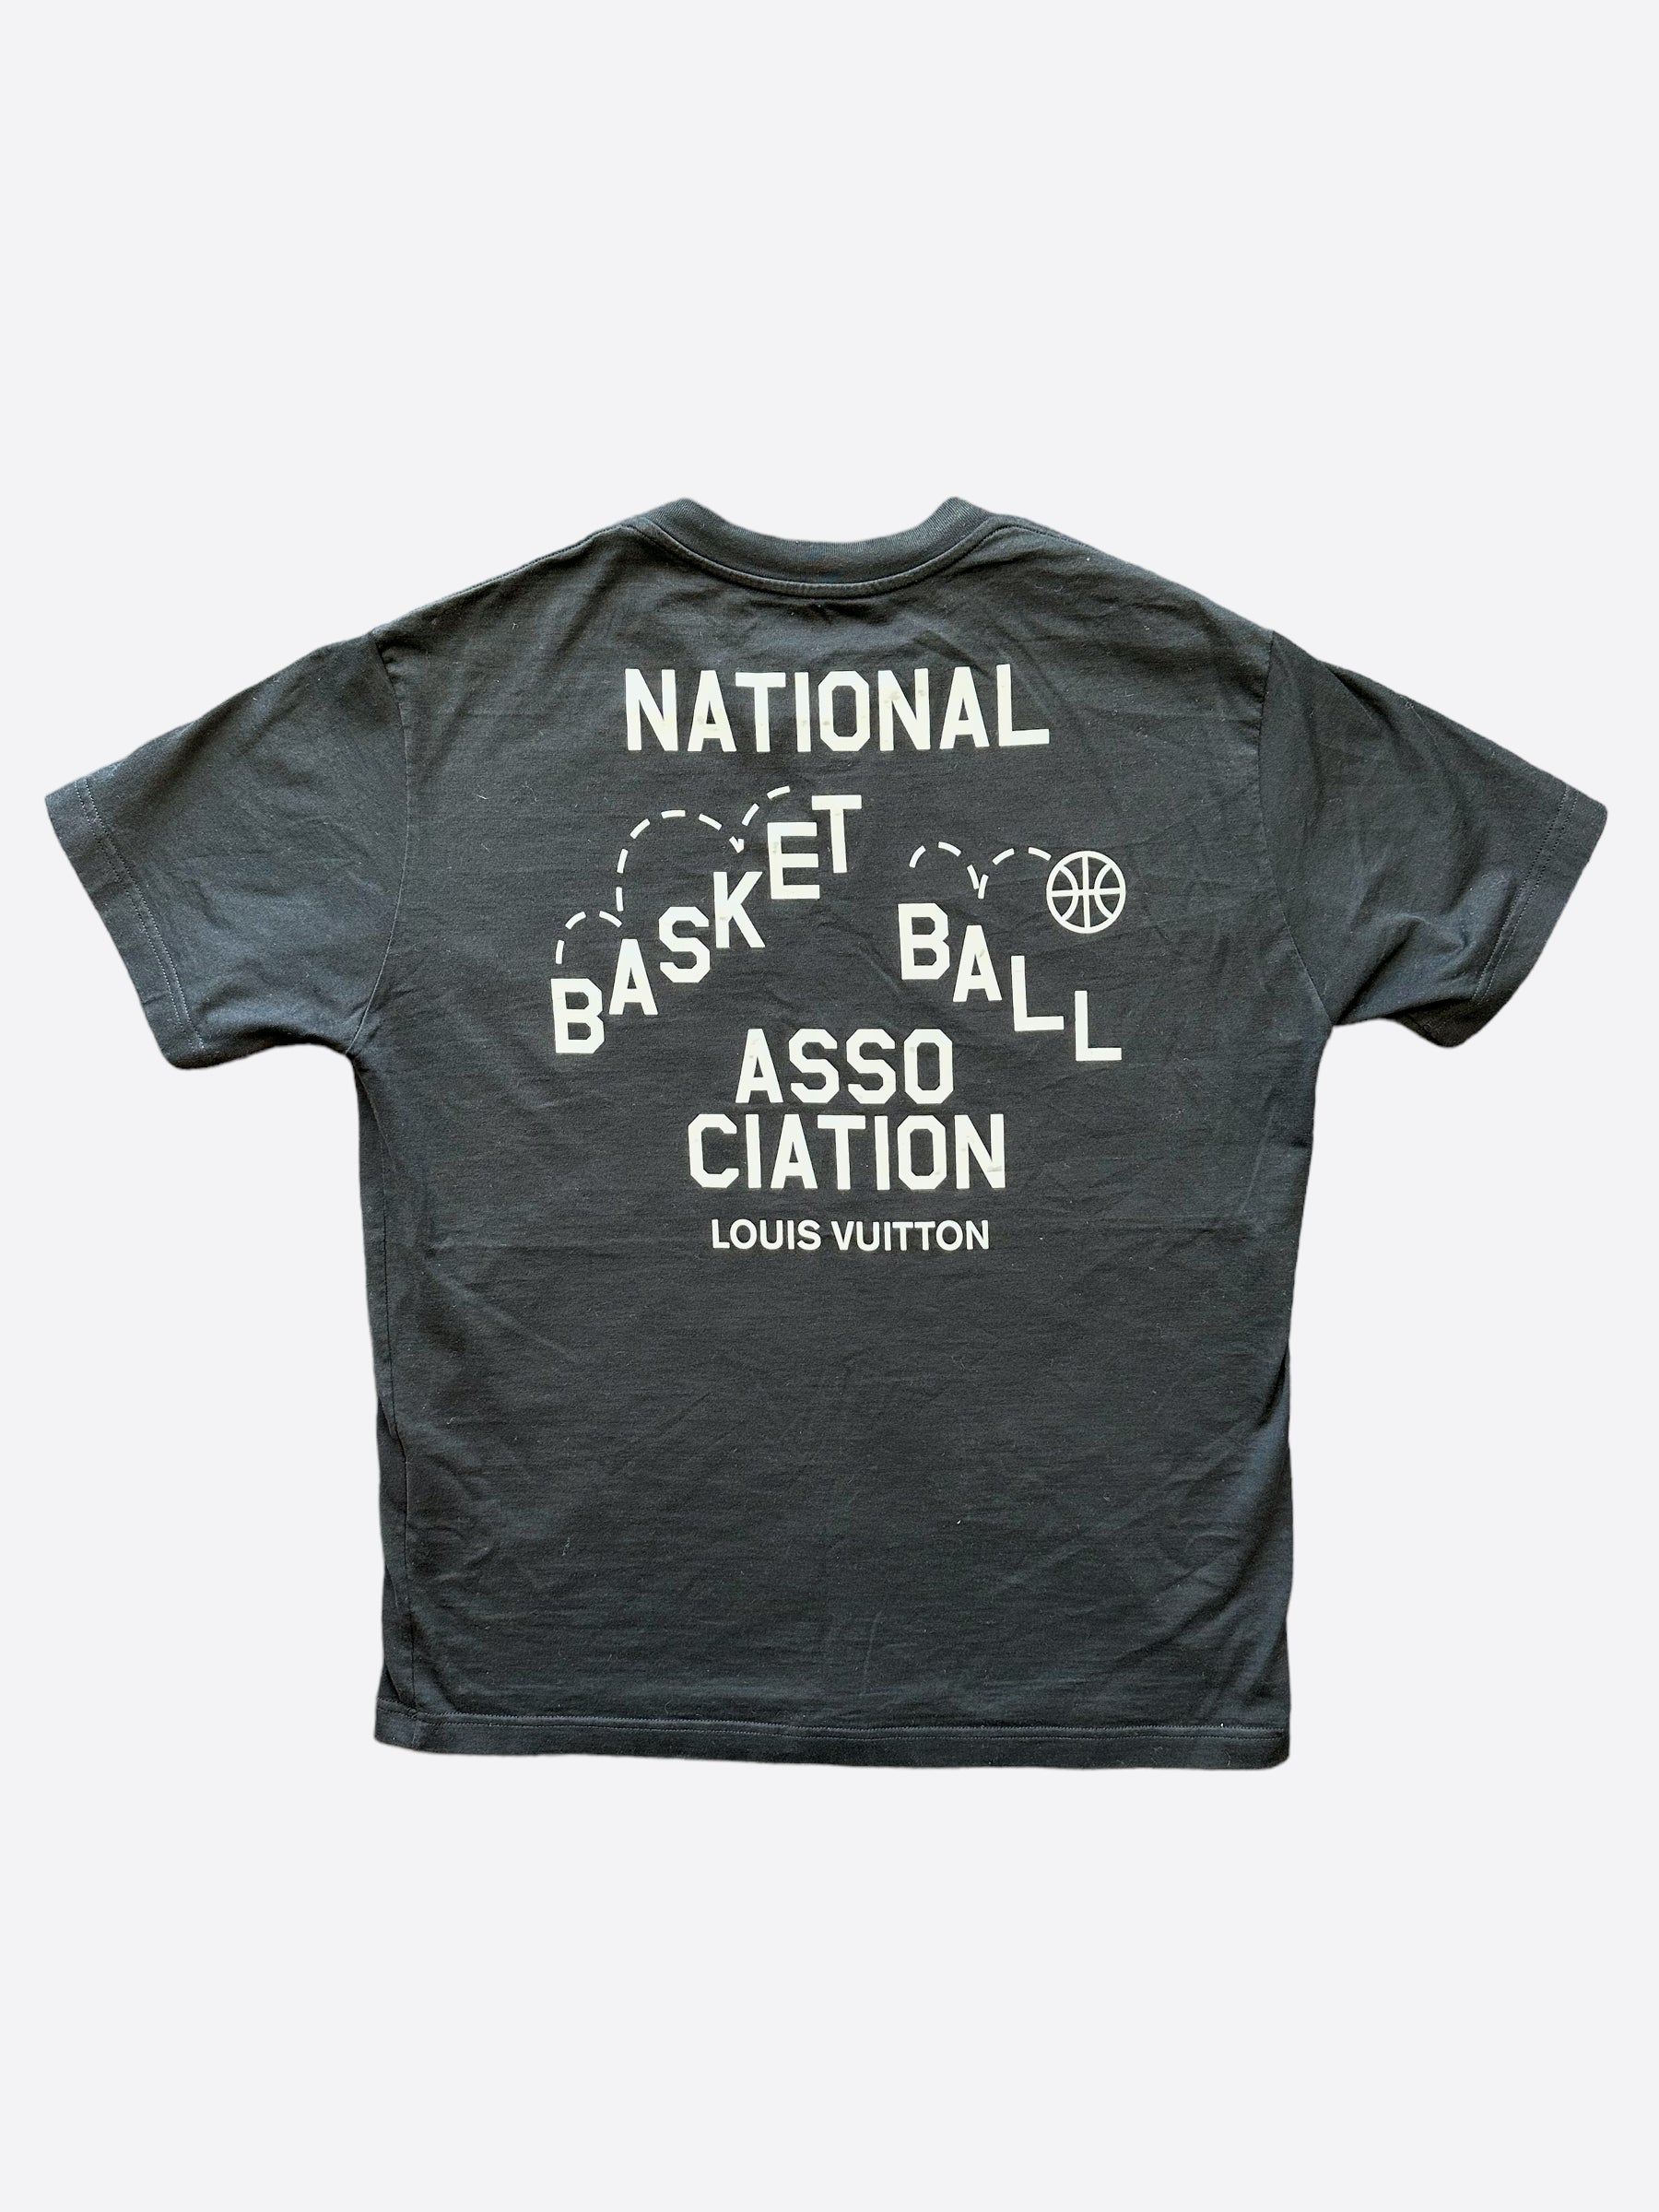 Louis Vuitton national basketball association shirt, hoodie, sweater and  v-neck t-shirt